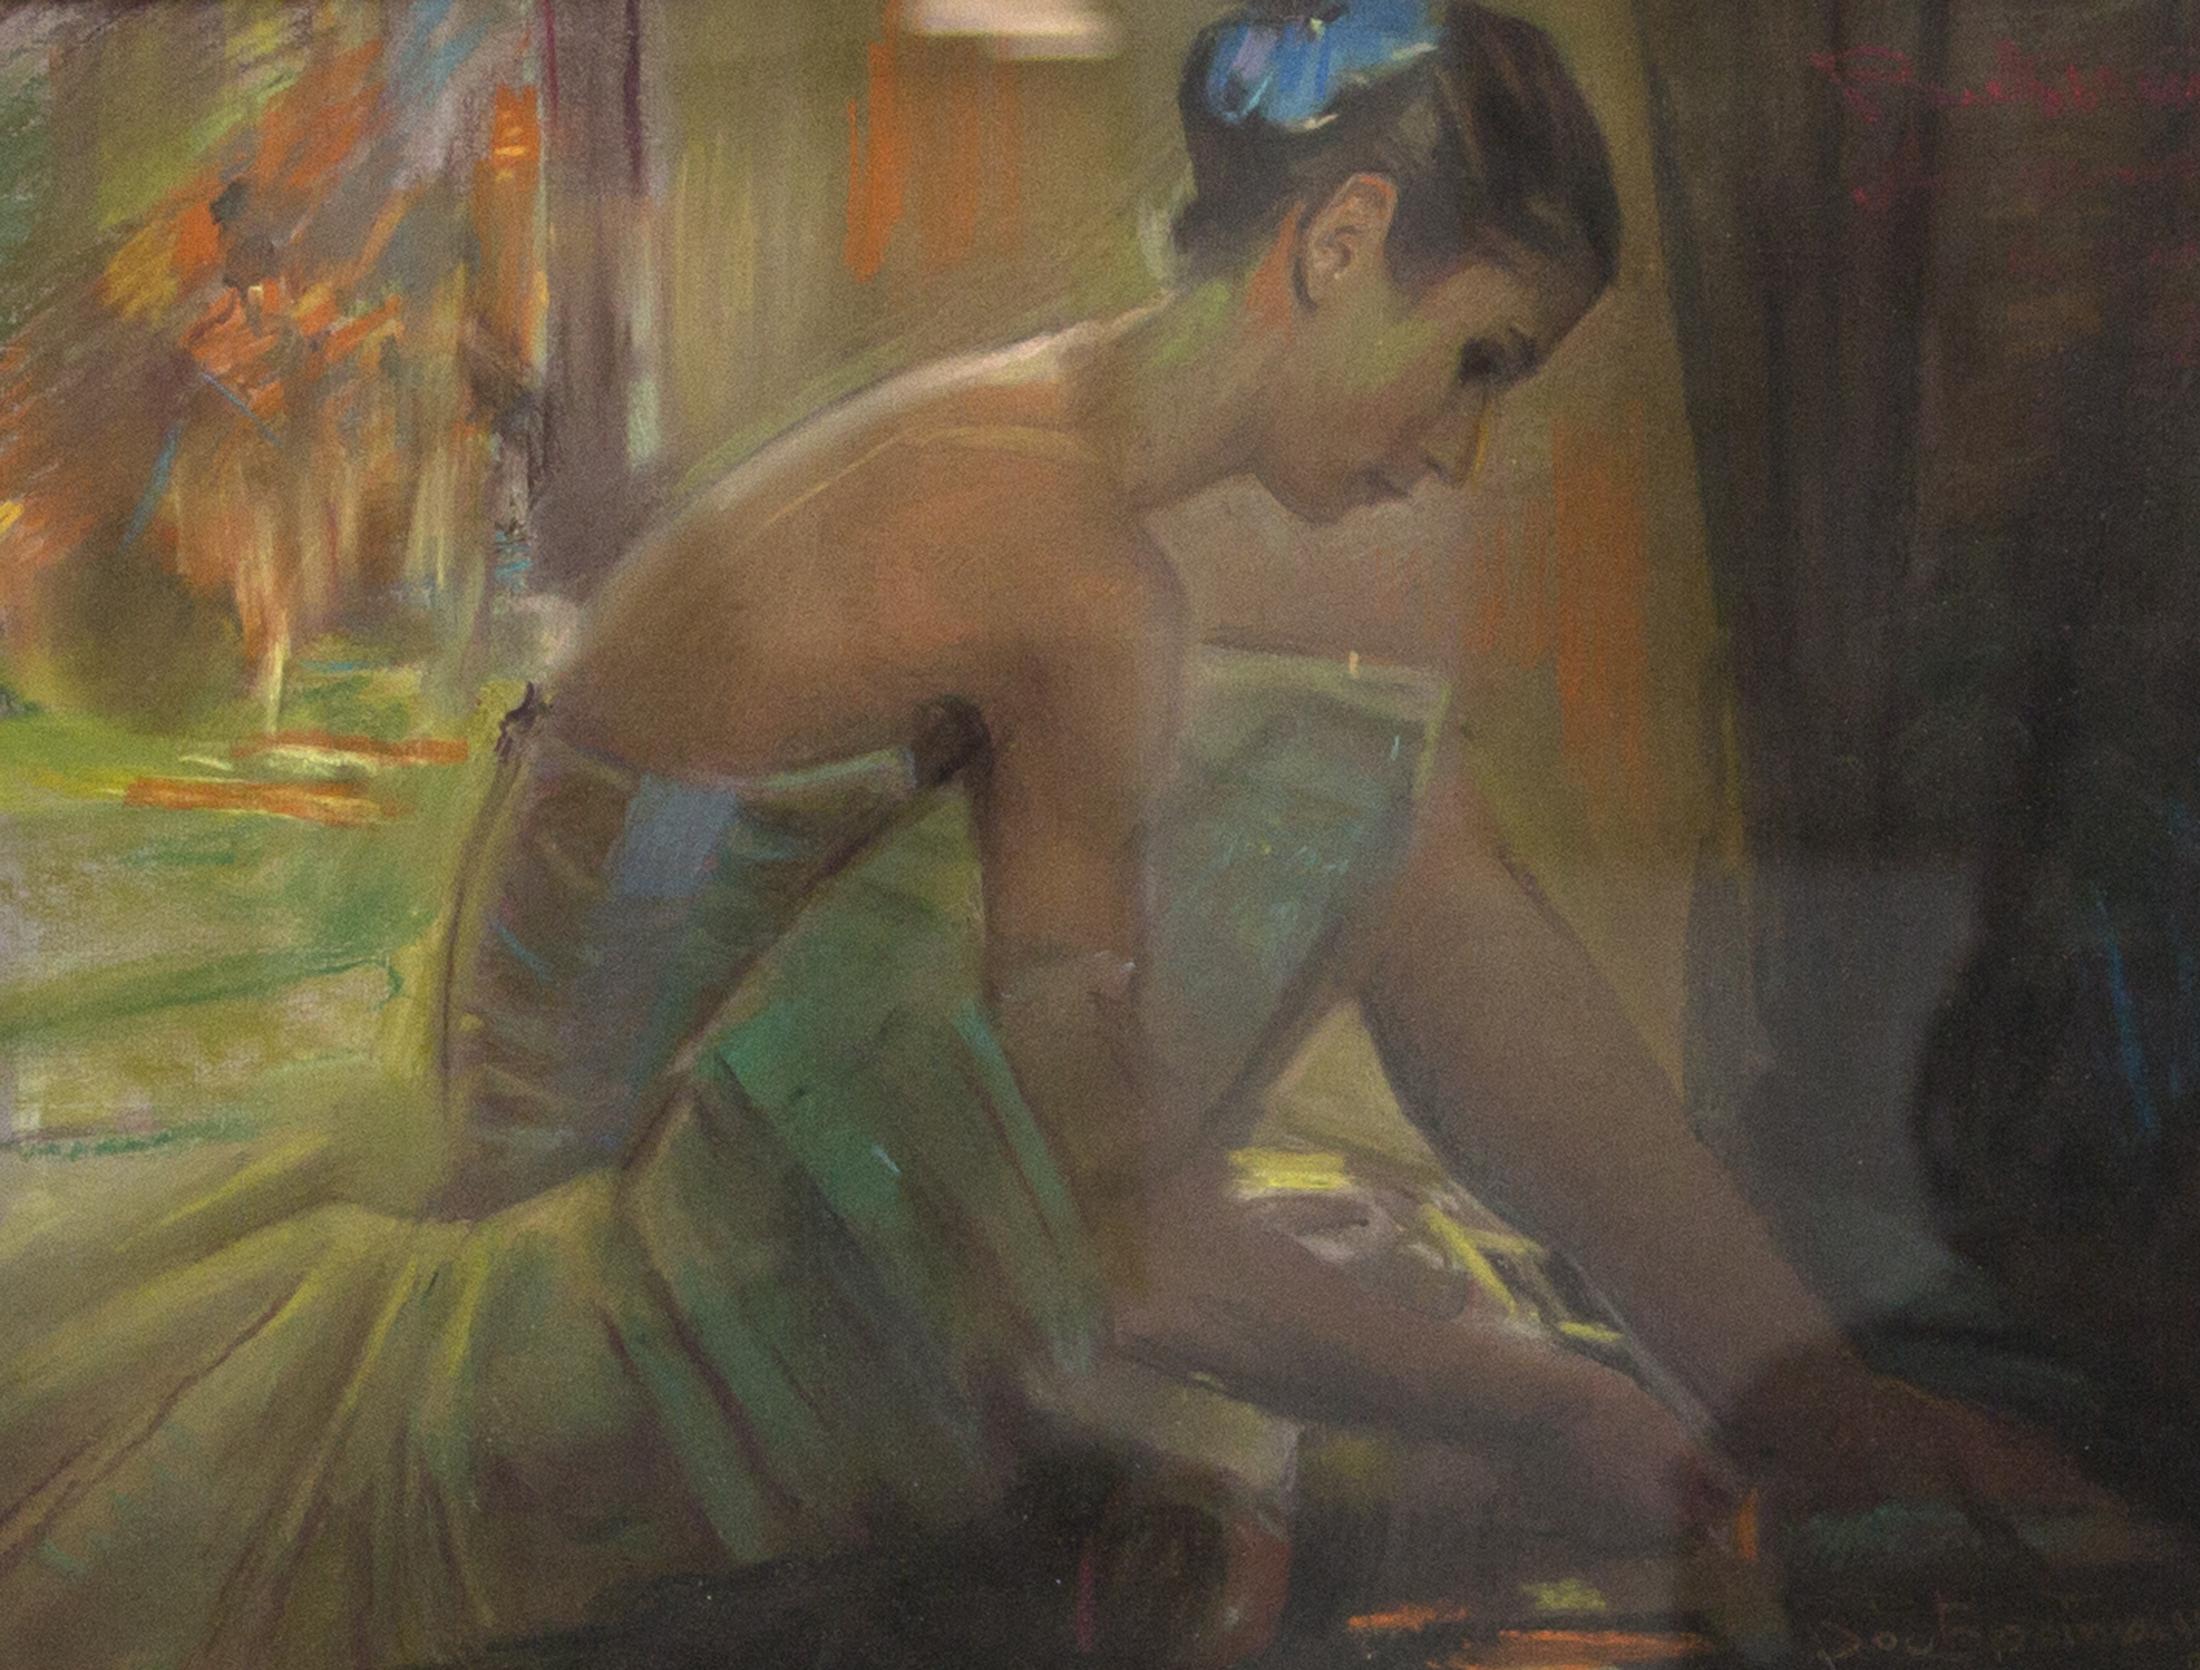 артистка балета А. Дементьева. Original modern art painting